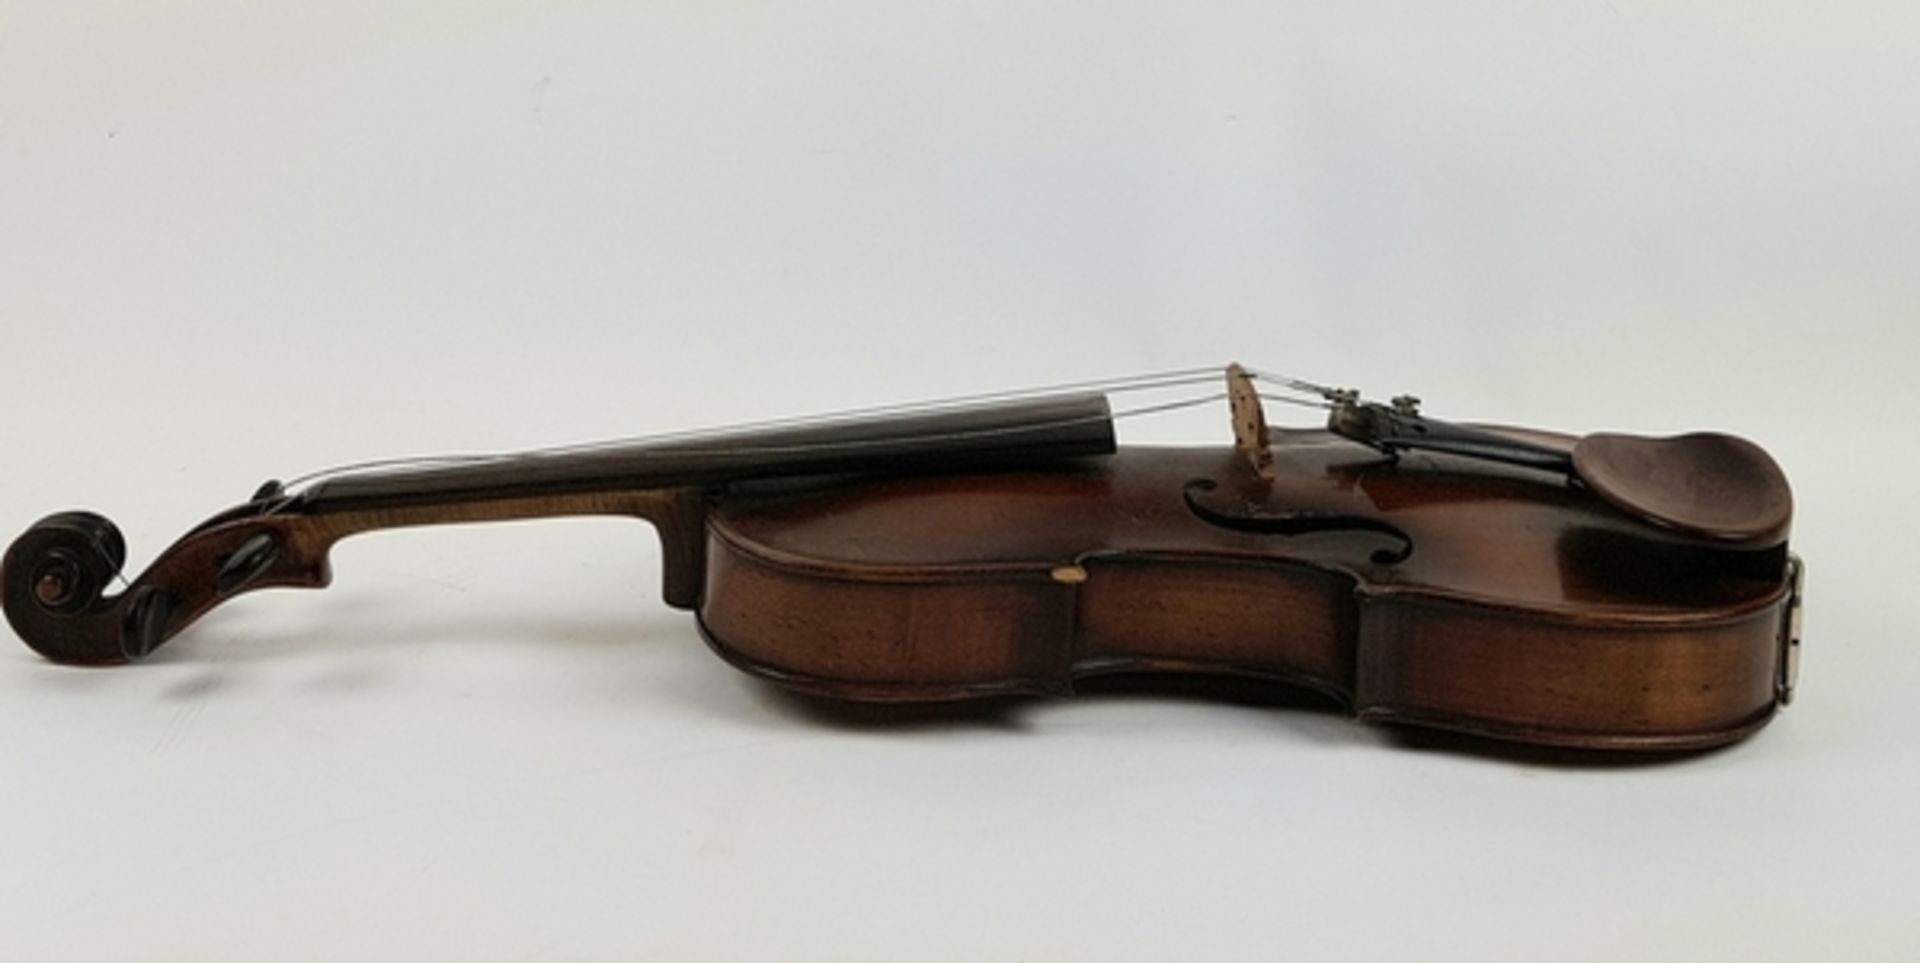 (Muziekinstrumenten) Viool, Josef Klotz Mittenwalde anno 1795Viool Josef Klotz Mittenwalde anno 1795